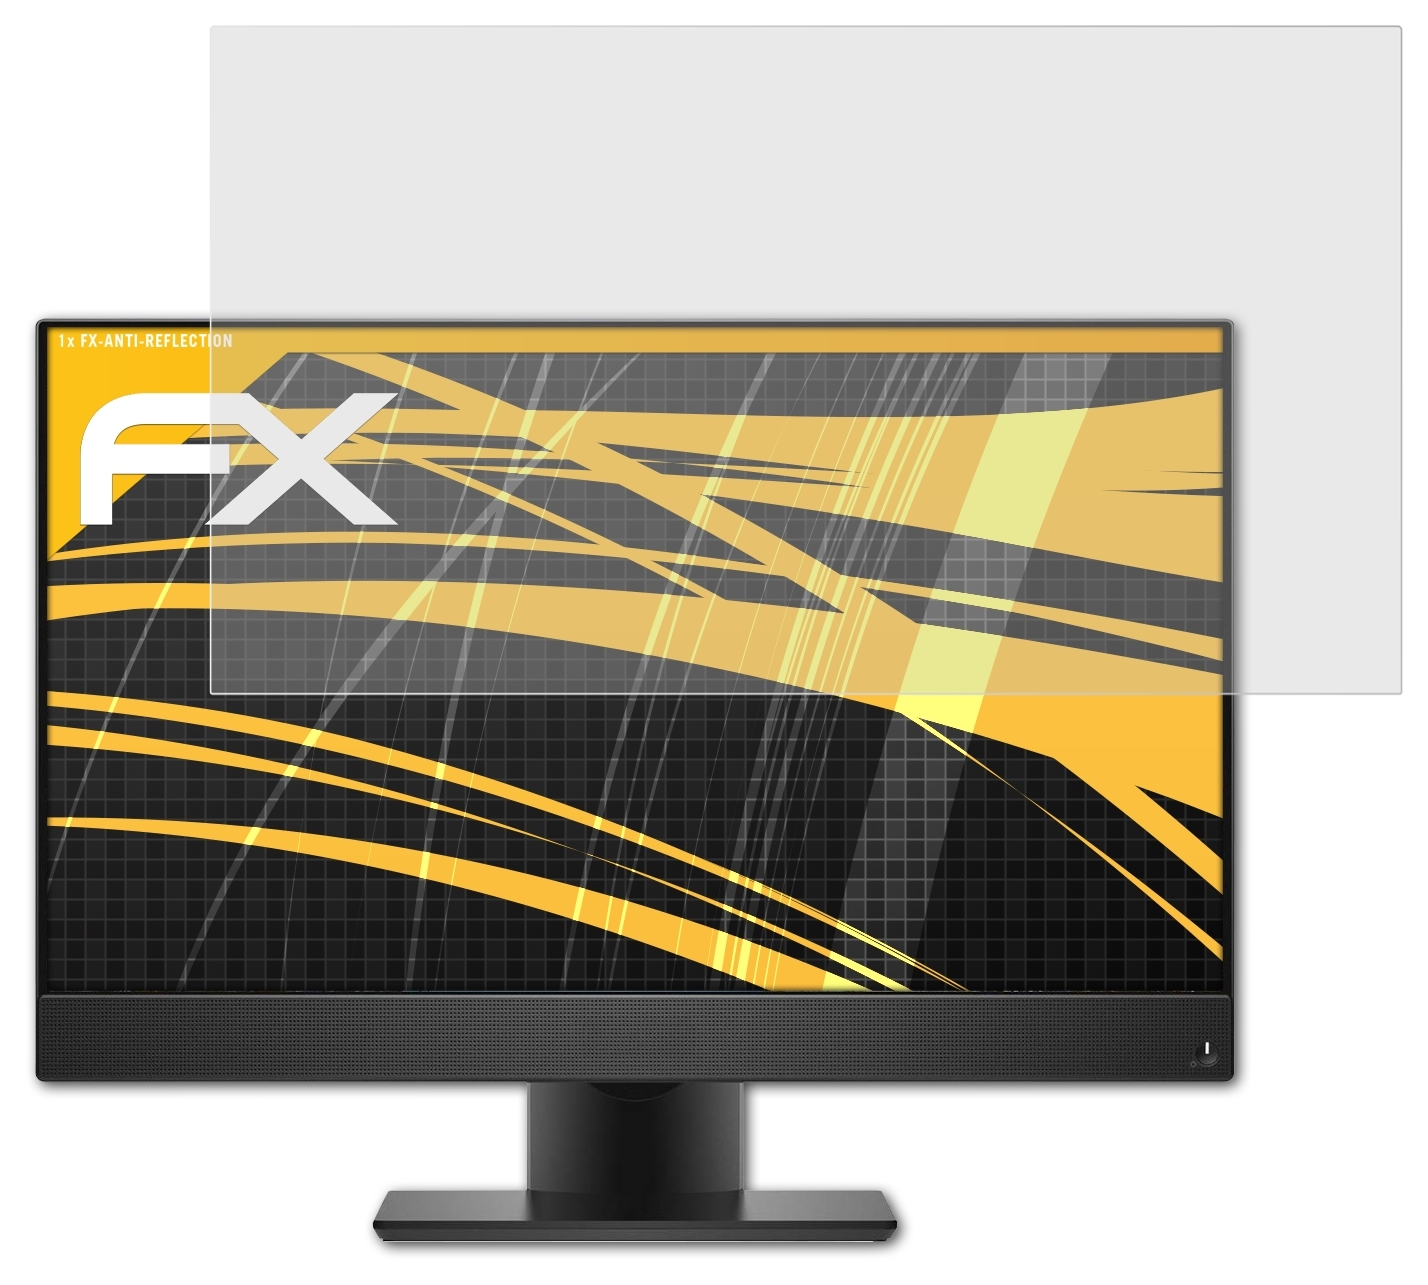 ATFOLIX FX-Antireflex Displayschutz(für Dell 7760) OptiPlex